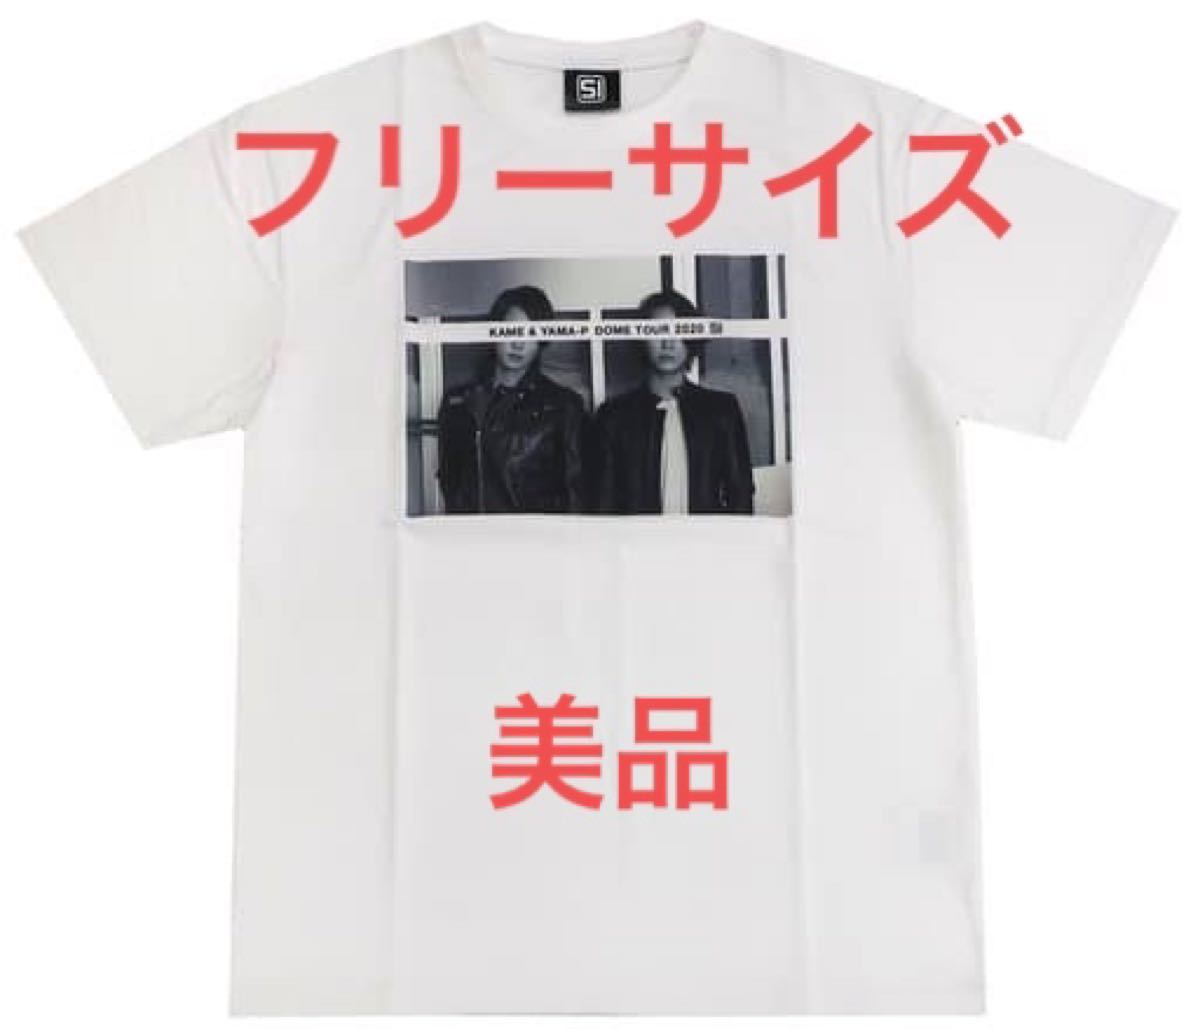 亀と山P 亀梨和也 山下智久 fragment × GOD SELECTION XXX ドームツアー 2020 tシャツ ホワイト